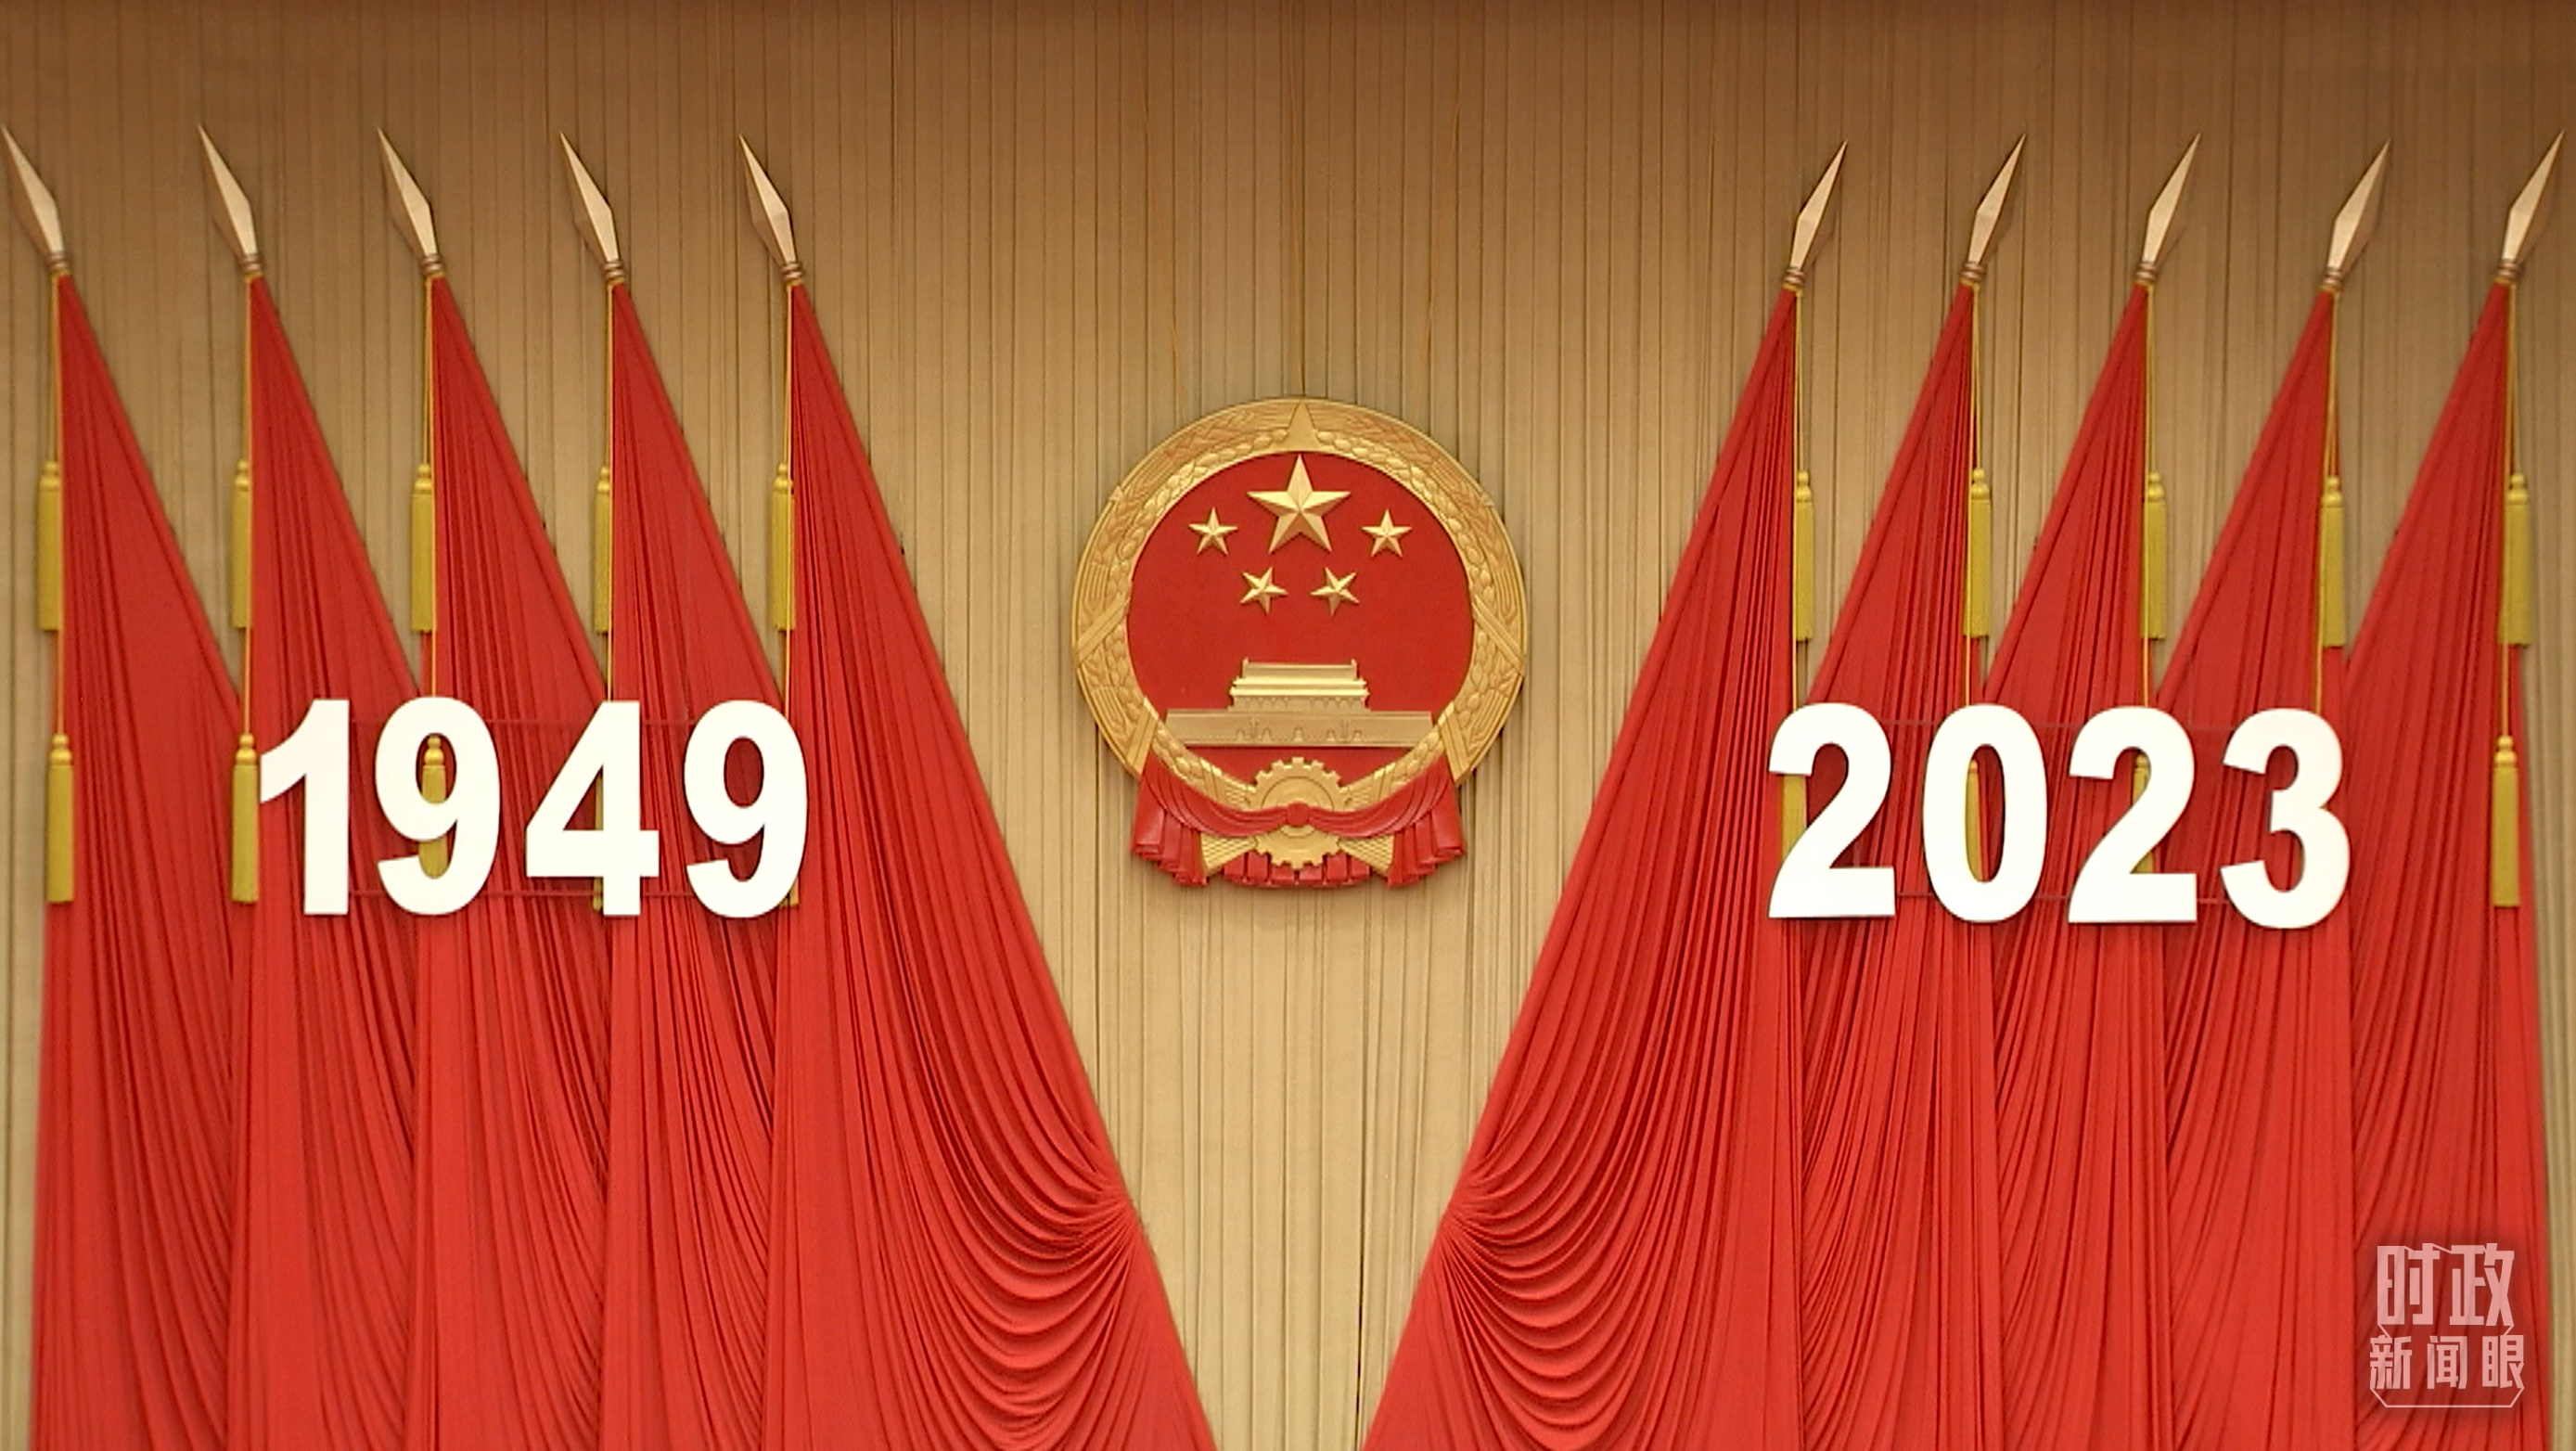 人民大会堂宴会厅内，主席台上方高悬着庄严的国徽，“1949－2023”大字年号在鲜艳的红旗映衬下格外醒目。